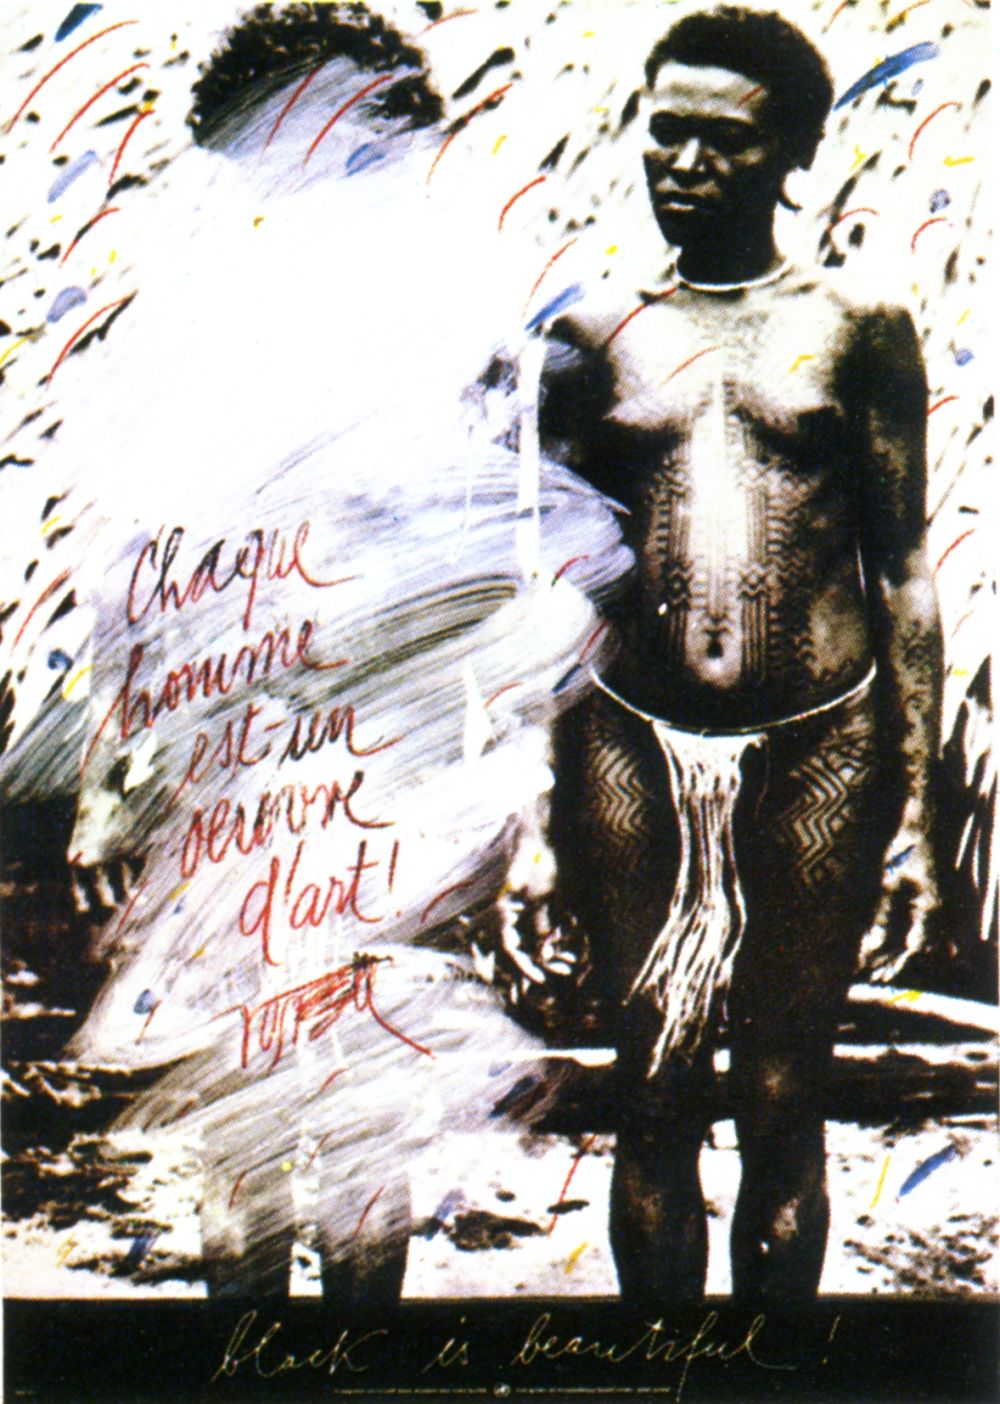 Wolf Vostell Każdy człowiek to dzieło sztuki, czarne jest piękne!, 1983, plakat offsetowy, 85 x 60 cm, Kolekcja CGII – inv. OE 989 ©VG Bild-Kunst, Bonn 2015 (źródło: materiały prasowe)